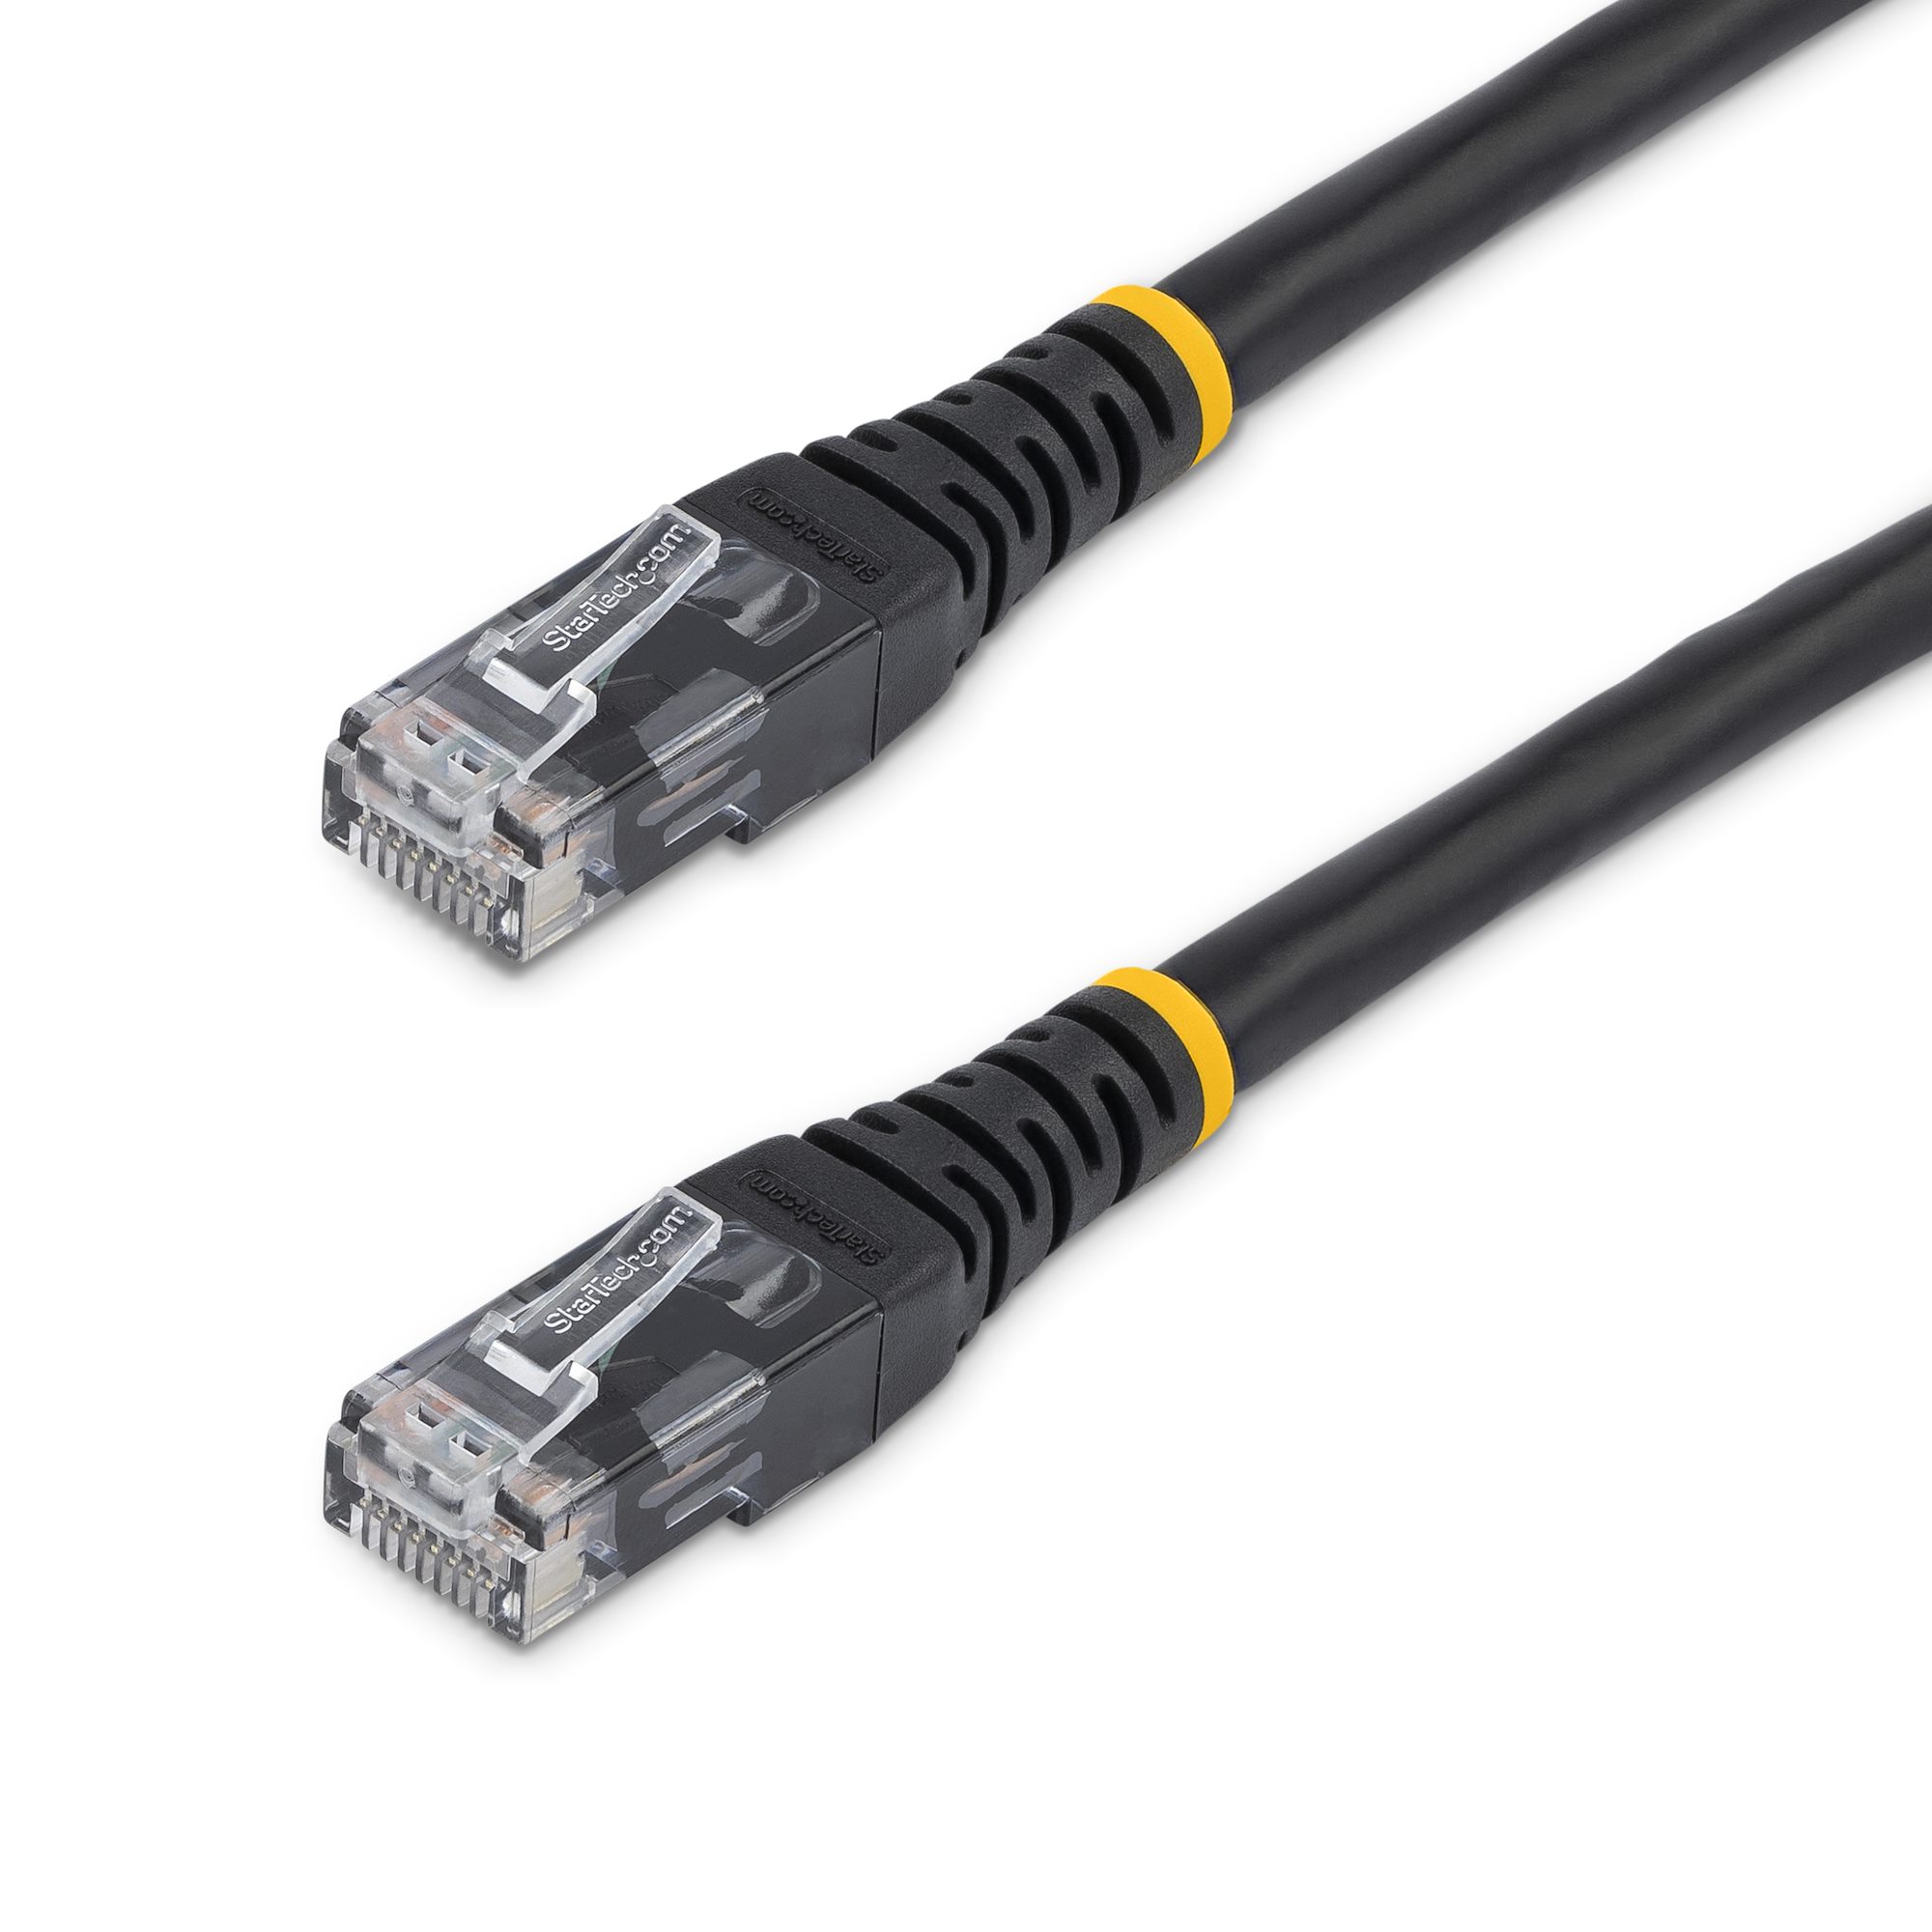 15ft CAT6 Ethernet Cable Black Cat 6 PoE (C6PATCH15BK) - Cat 6 Cables, Cables